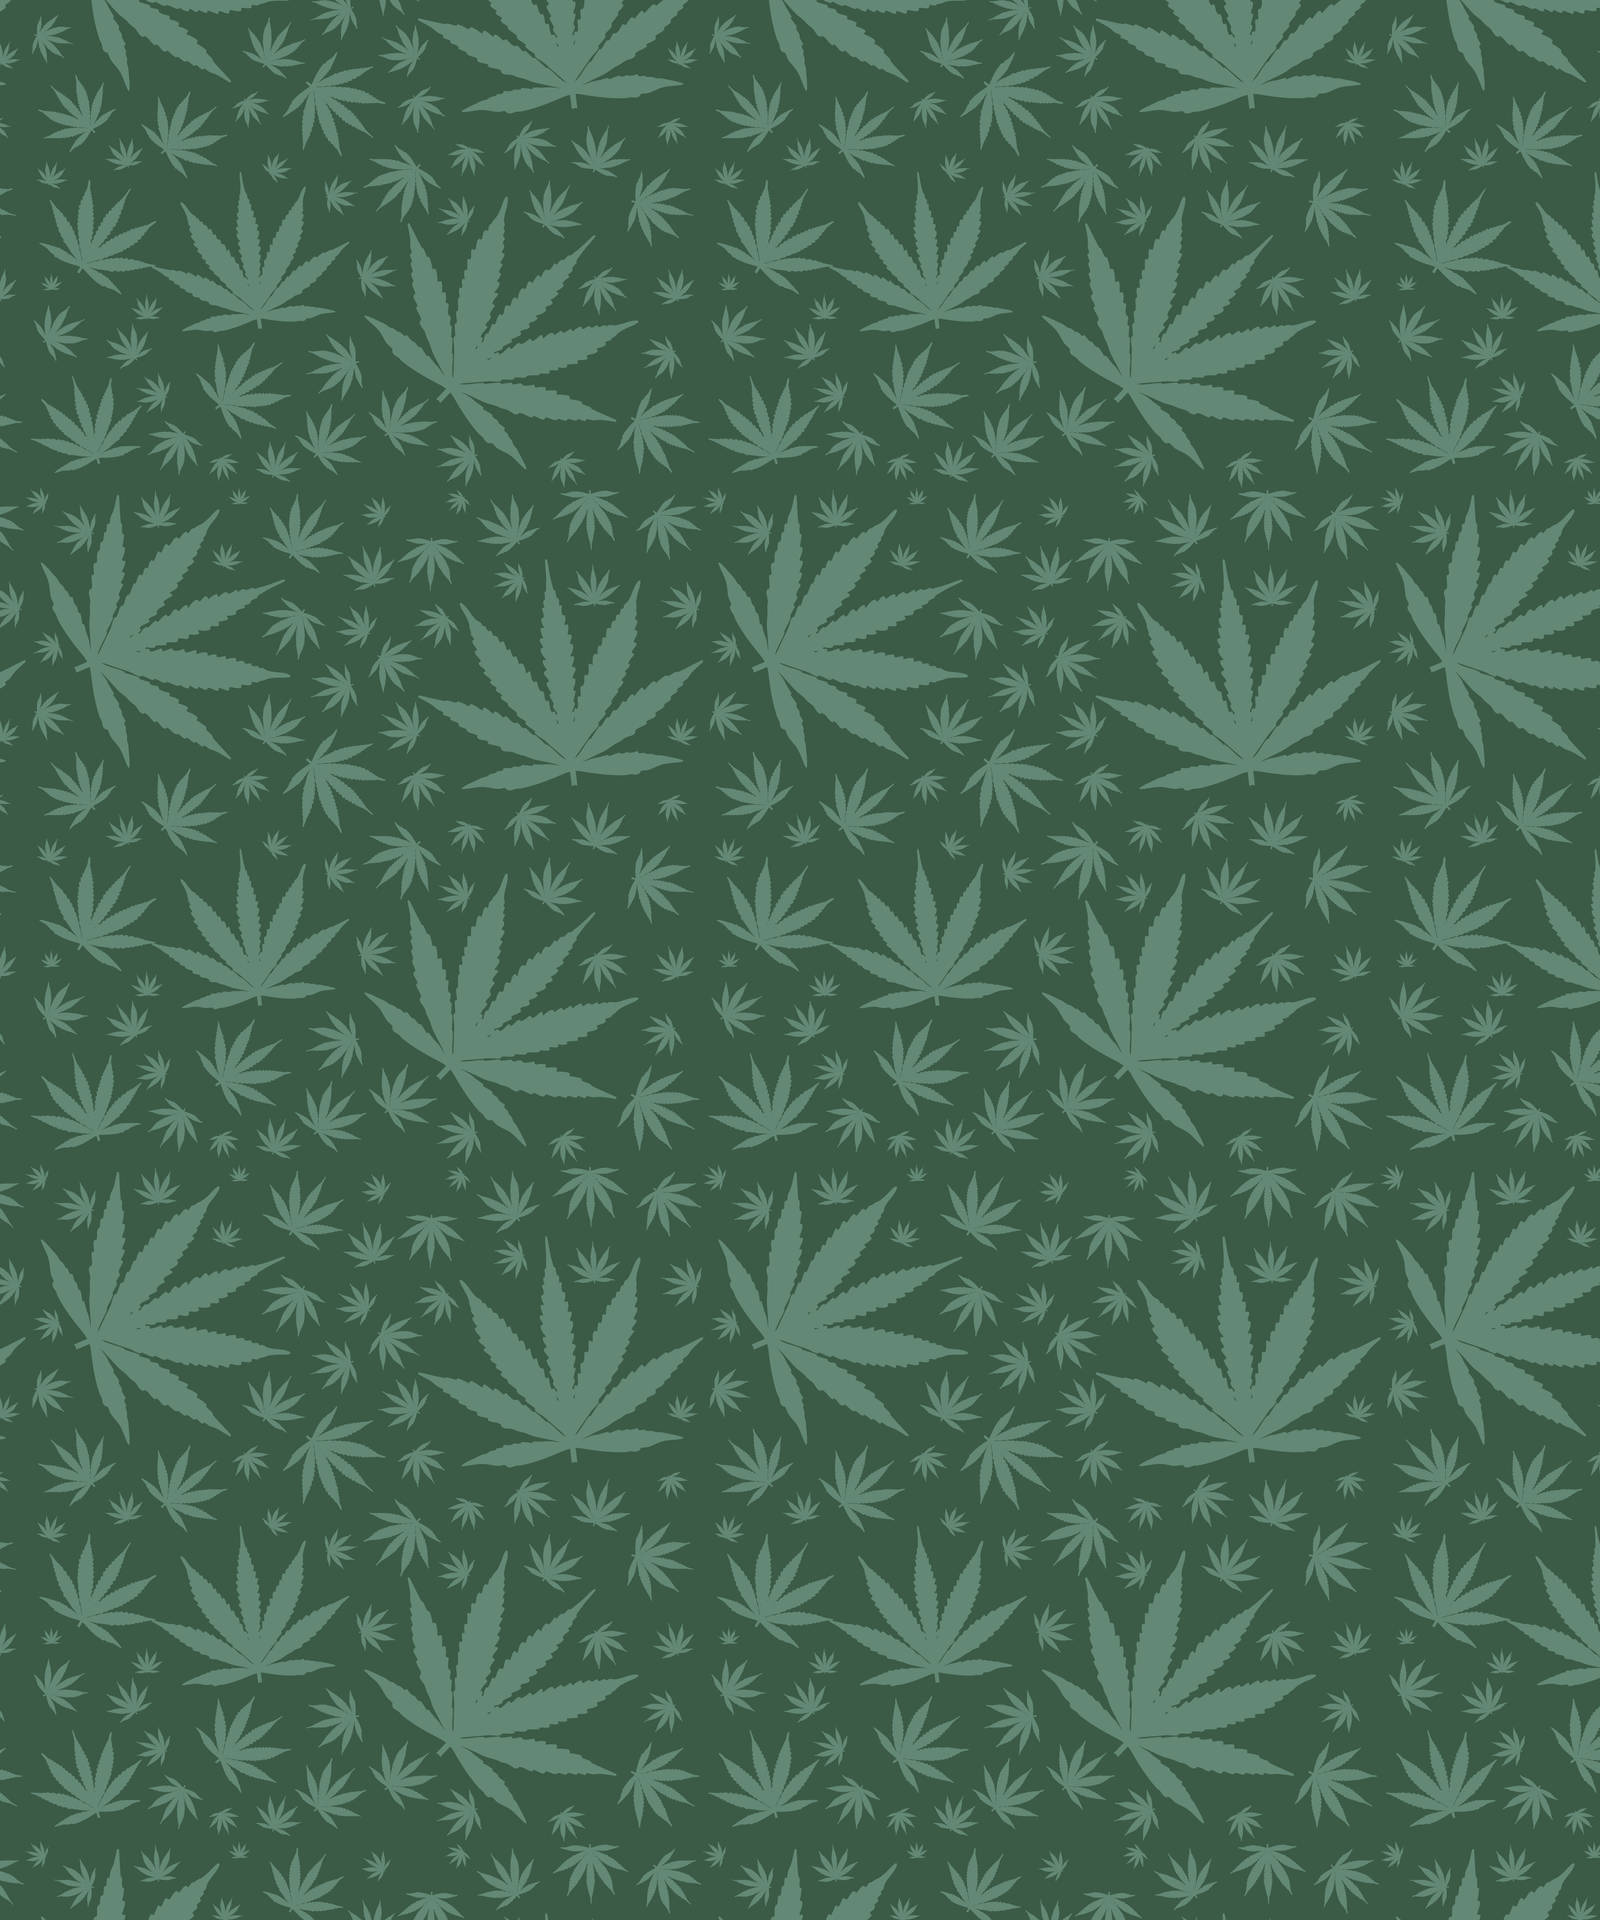 Fondode Pantalla Para Teléfono Totalmente Verde Con Gráficos De Hojas De Marihuana. Fondo de pantalla